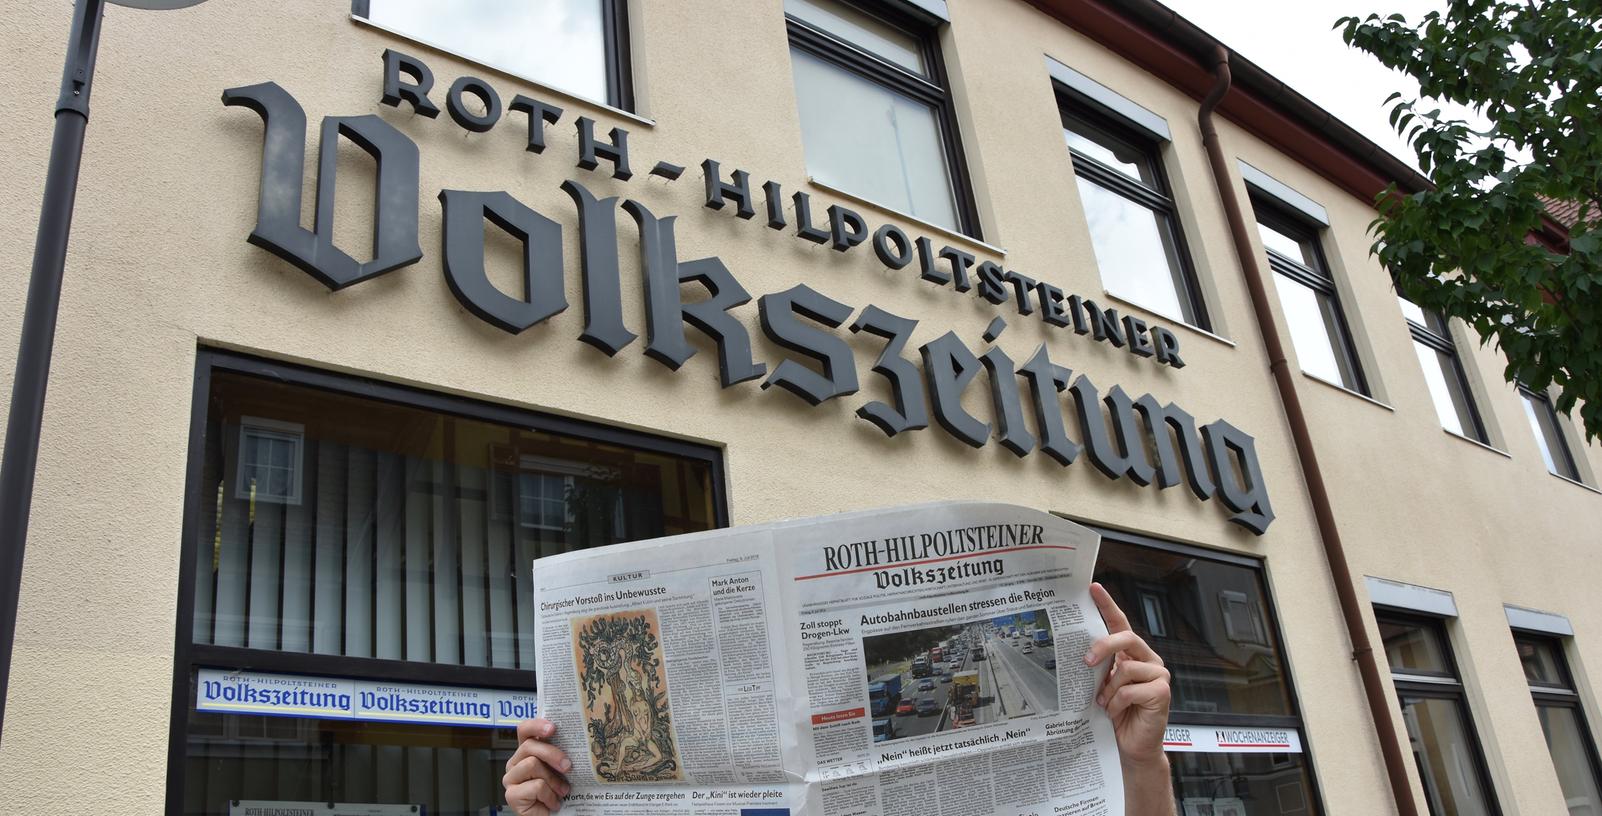 Seit 160 Jahren informiert die Roth-Hilpoltsteiner Volkszeitung über die Stadt und die Umgebung.